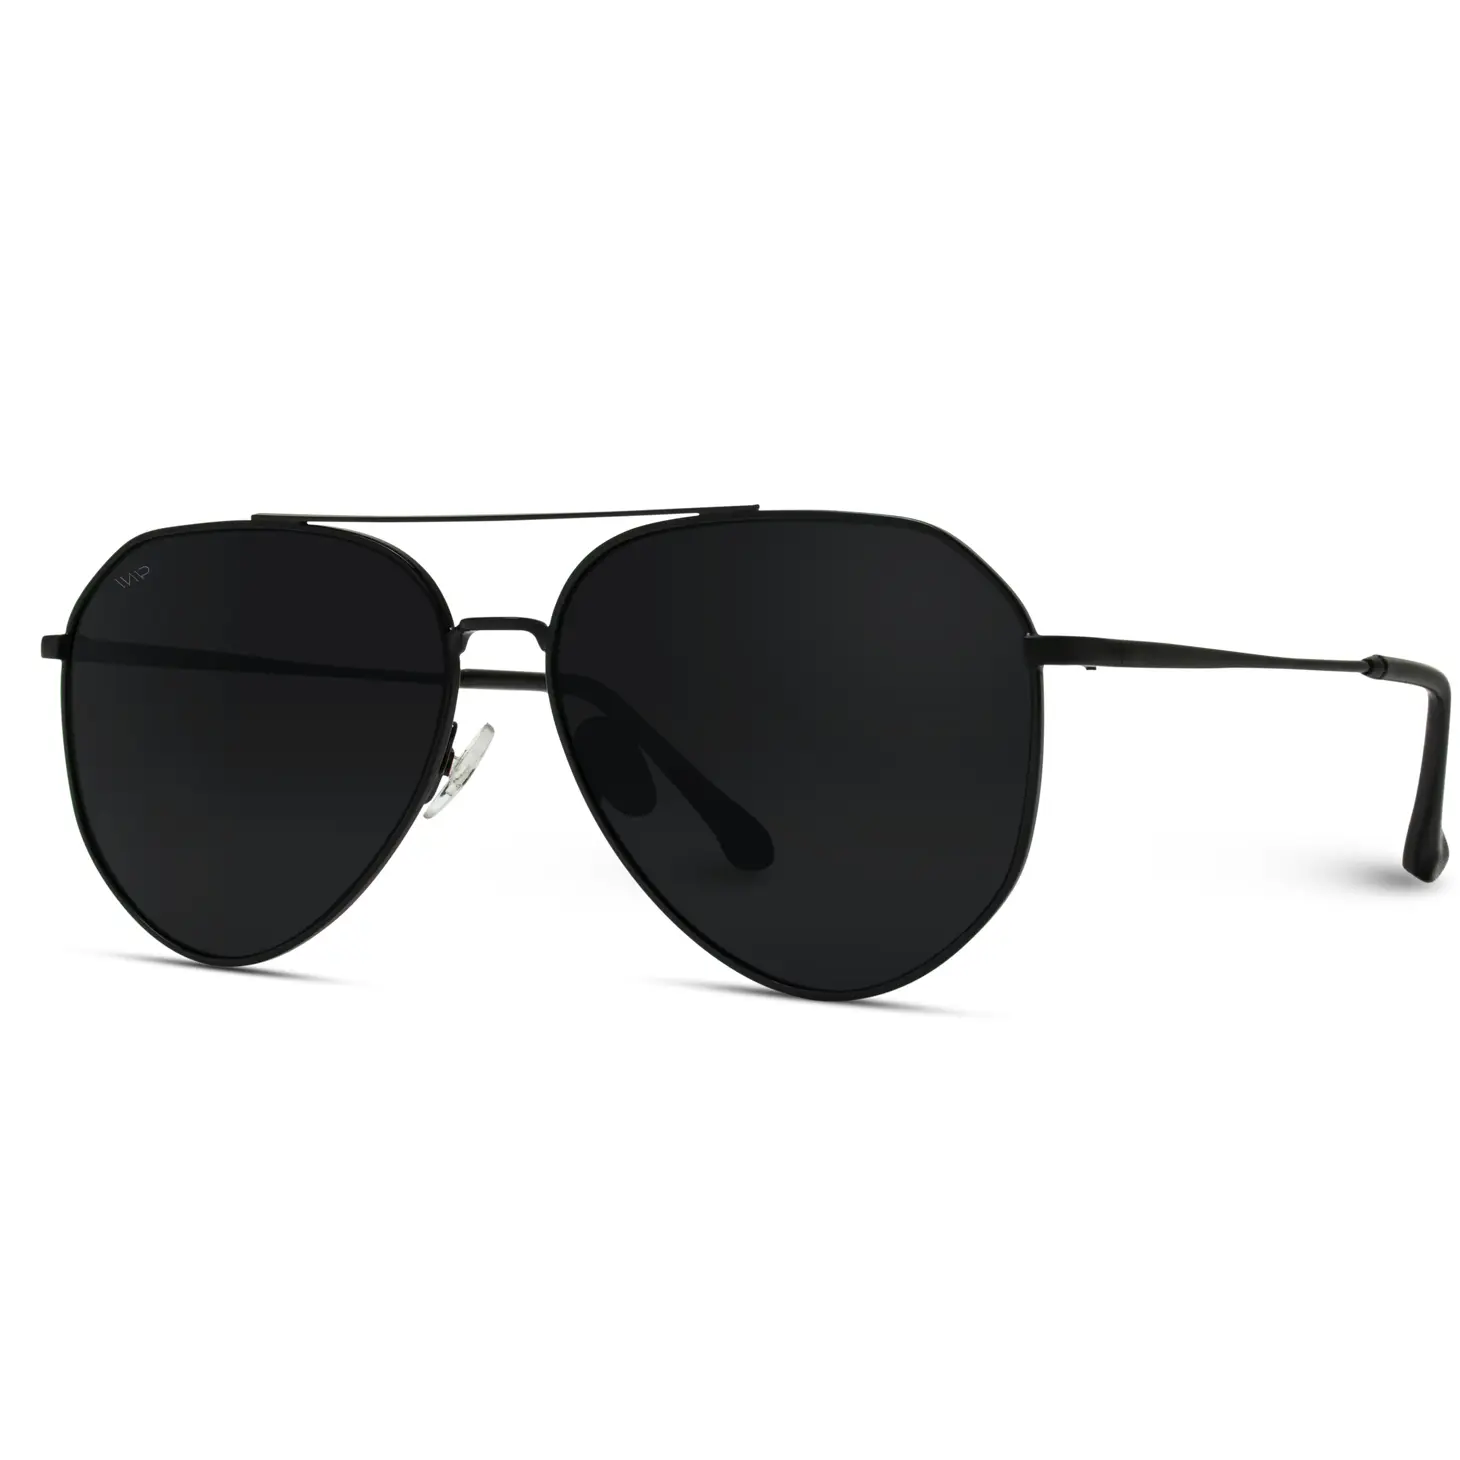 Ramsey Sunglasses in Black/Black